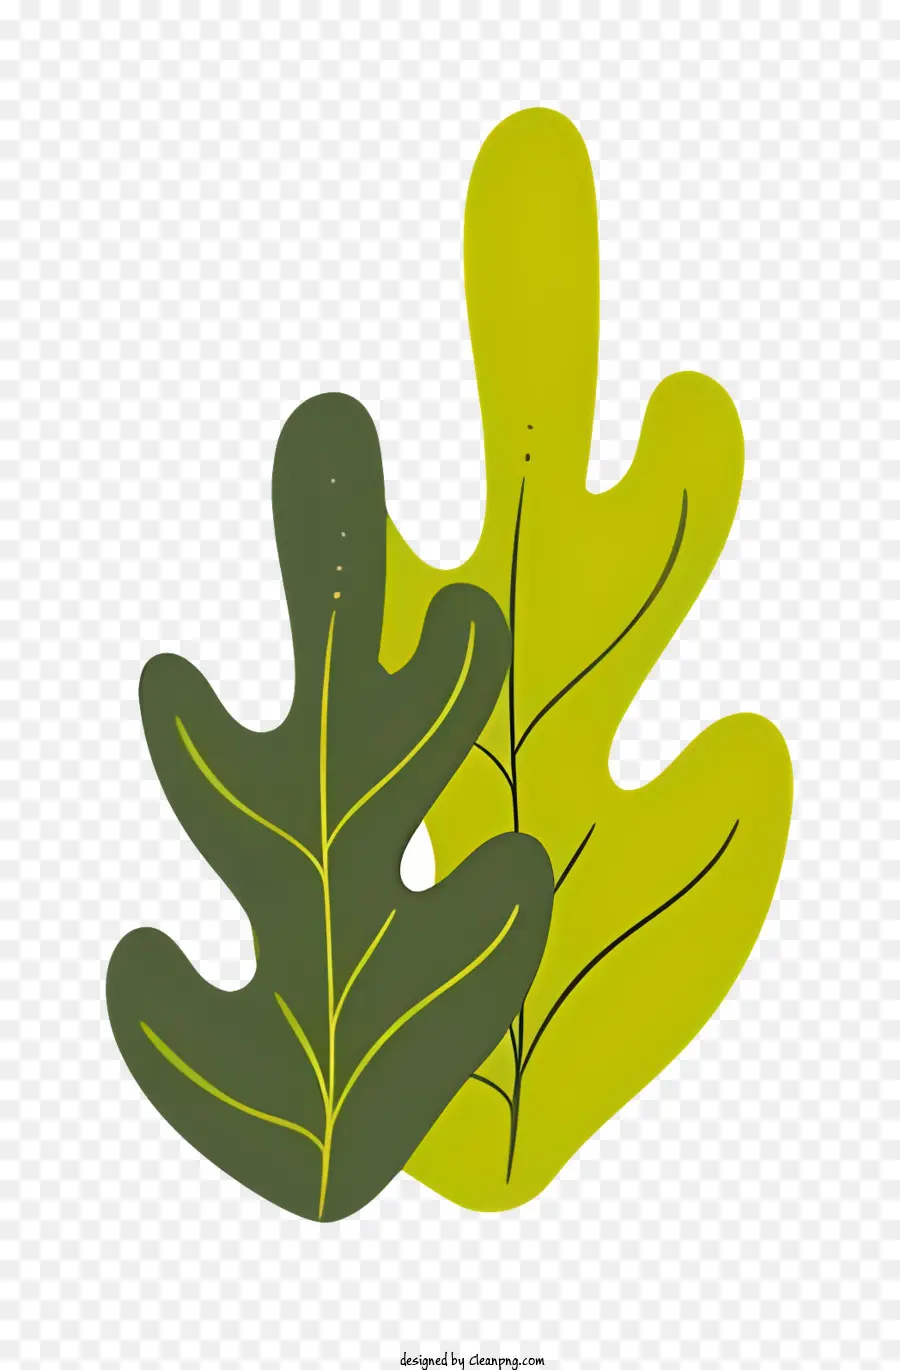 grünes Blatt - Grünes Blatt mit spitzen Ende auf schwarzem Hintergrund